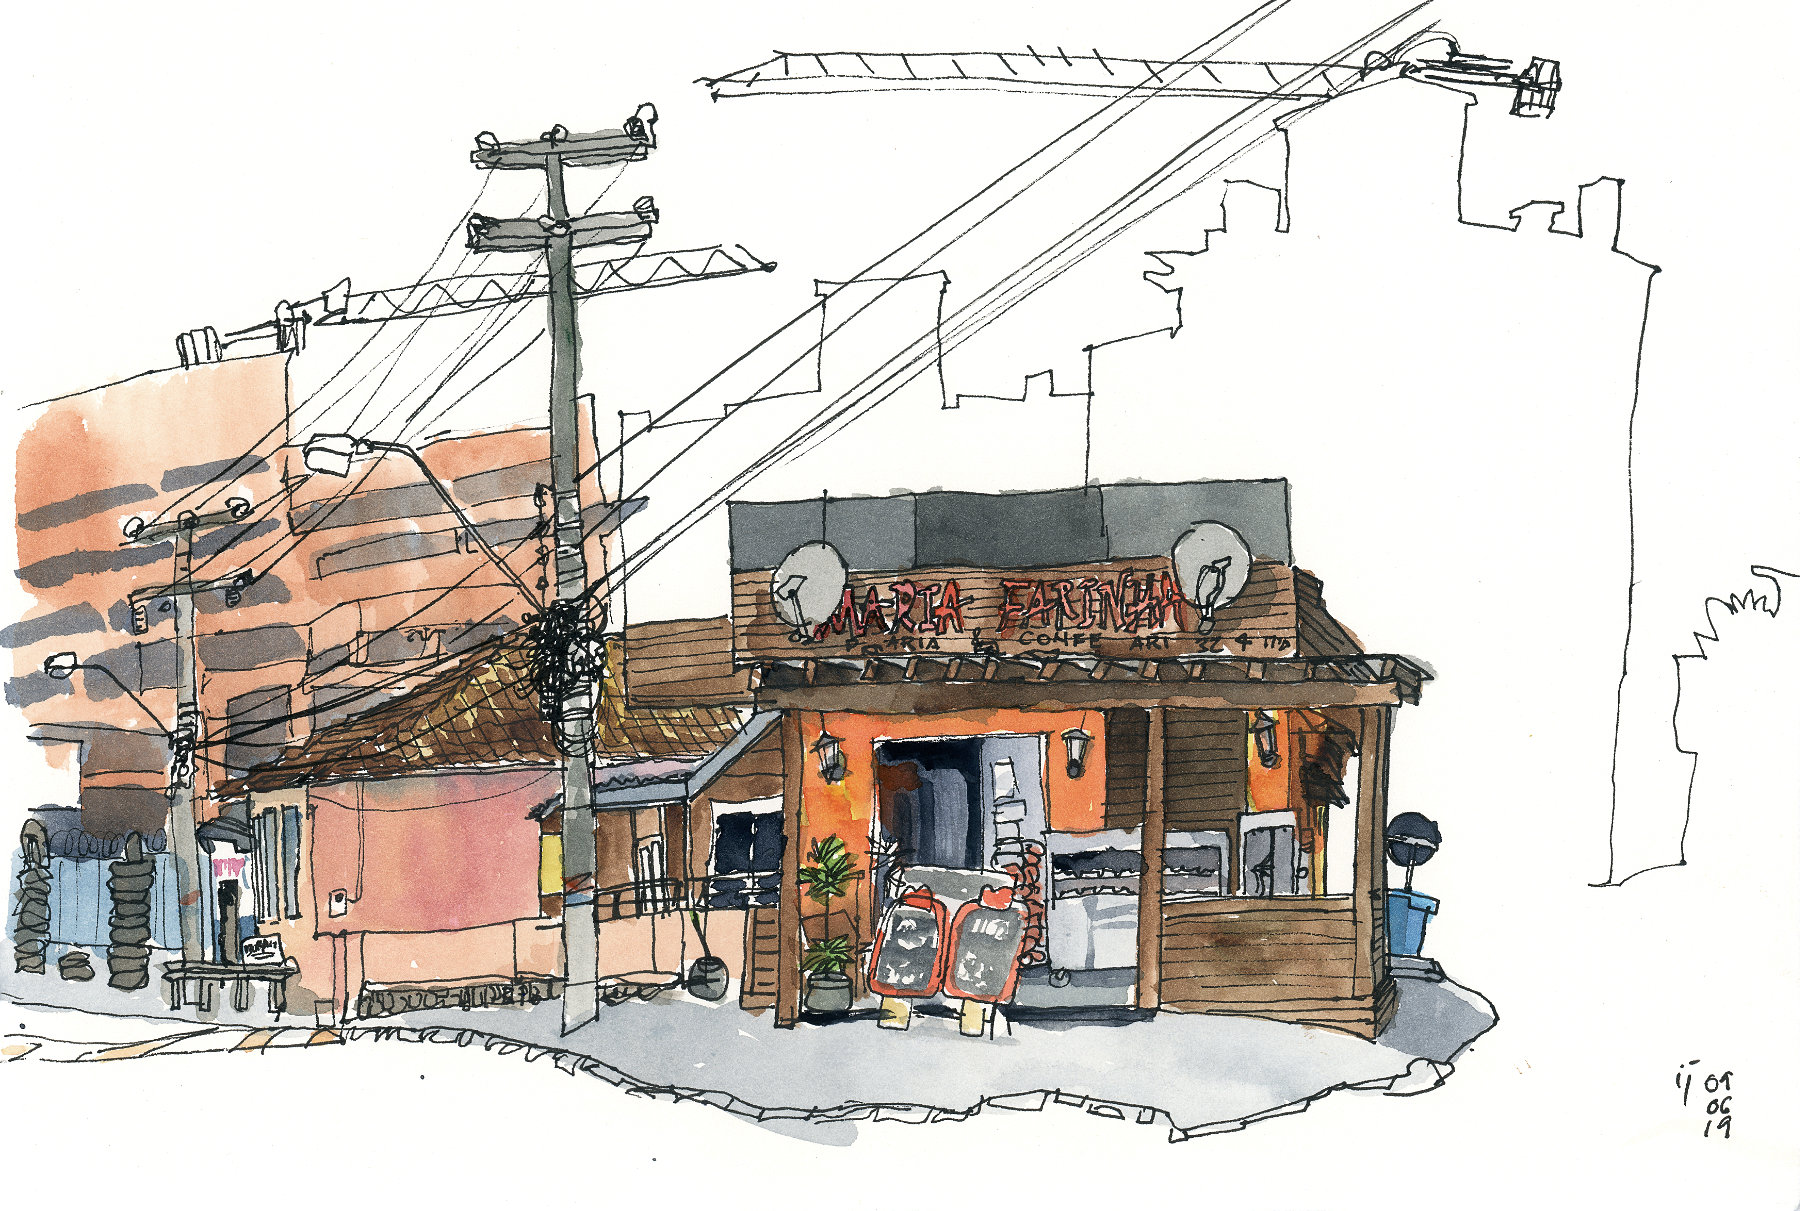 Desenho a traço e aquarela mostrando a padaria Maria Farinha e as casas ao fundo